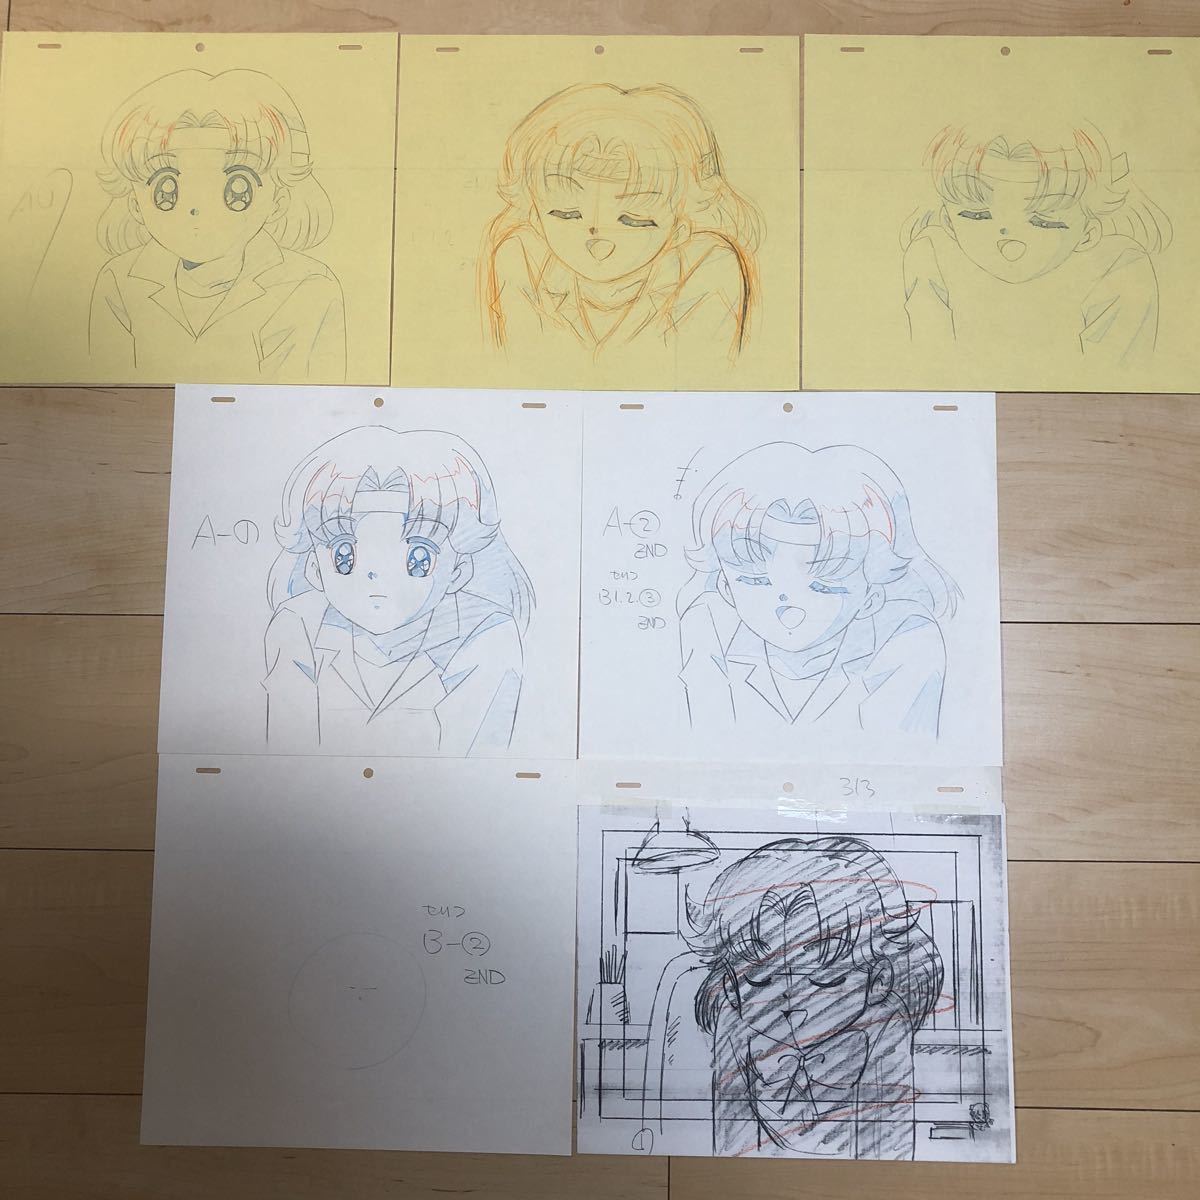 [Selten] Phantom Thief Saint Tail handgezeichnete Originalillustration 5er Set Anime Kostenloser Versand, Zellzeichnung, ka-Linie, Phantomdieb Saint Tail